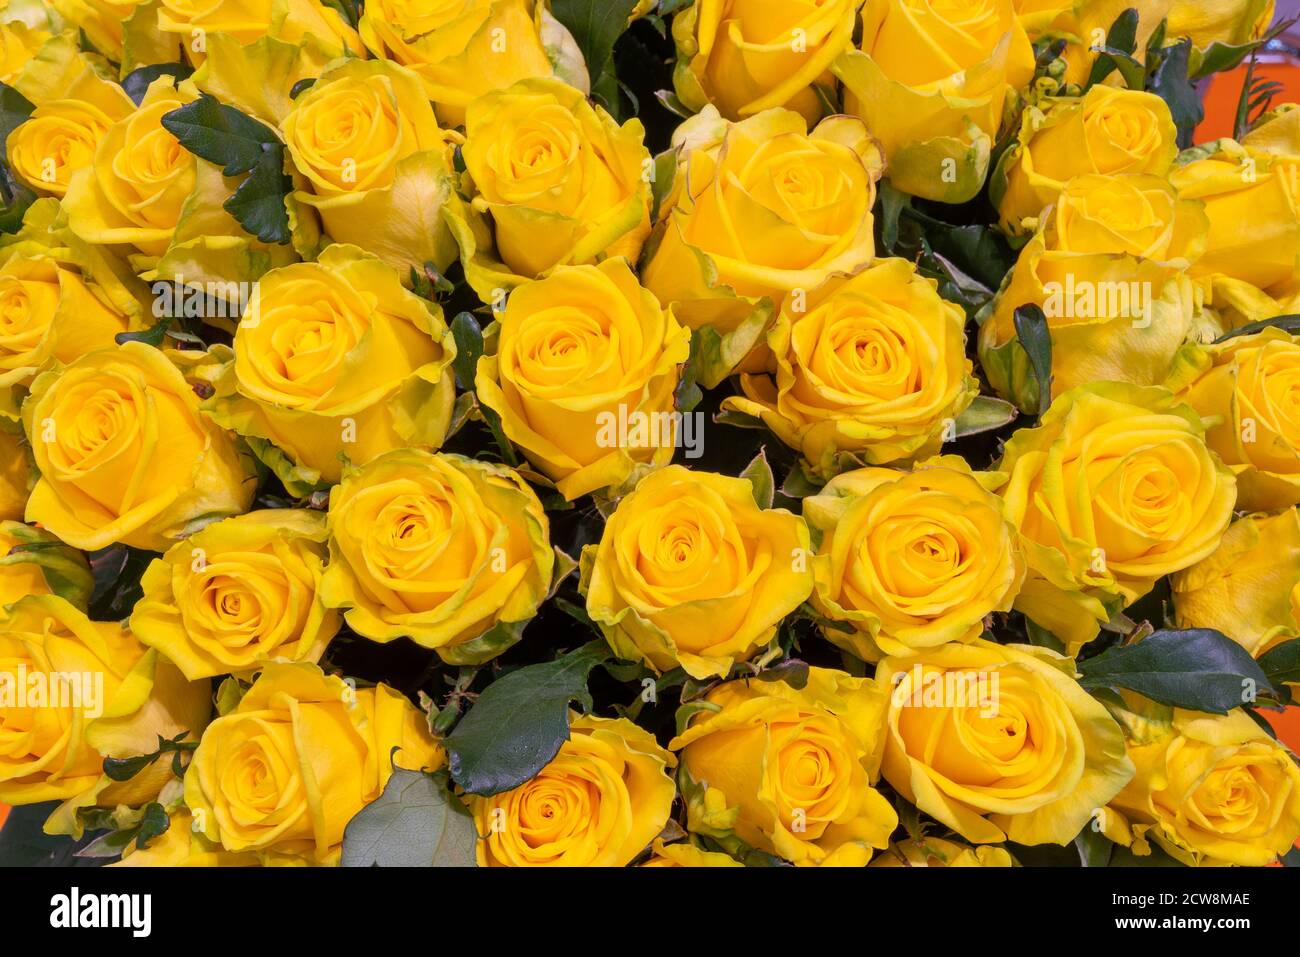 Belle rose gialle immagini e fotografie stock ad alta risoluzione - Alamy